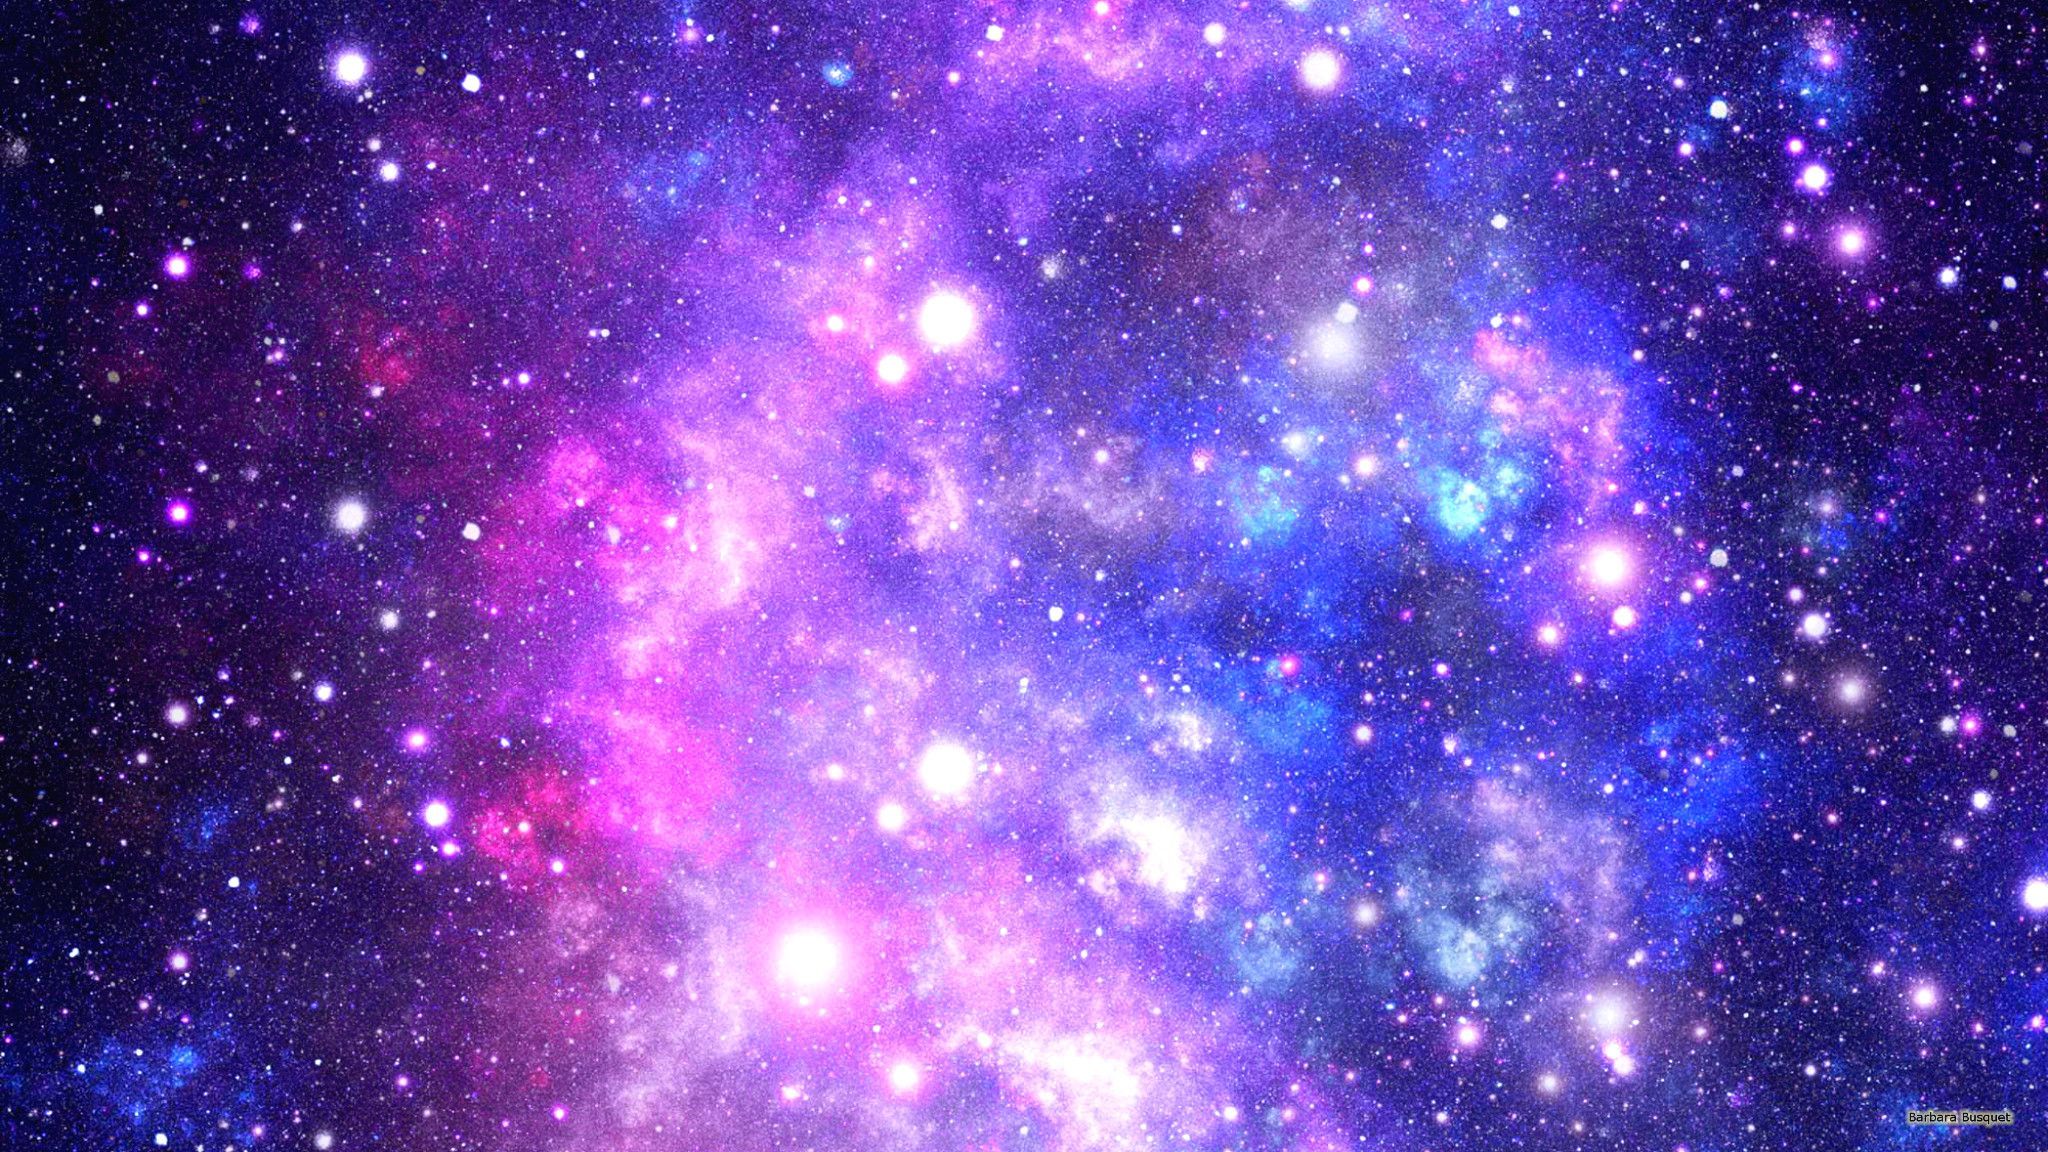 Pink and Blue Galaxy Wallpapers là sự kết hợp giữa sắc hồng và xanh dương, mang lại sự hài hòa và mạnh mẽ khi sử dụng cho màn hình điện thoại của bạn. Các hình ảnh của vũ trụ cùng các gam màu sắc tương phản này sẽ khiến bạn ghi điểm với người xung quanh.